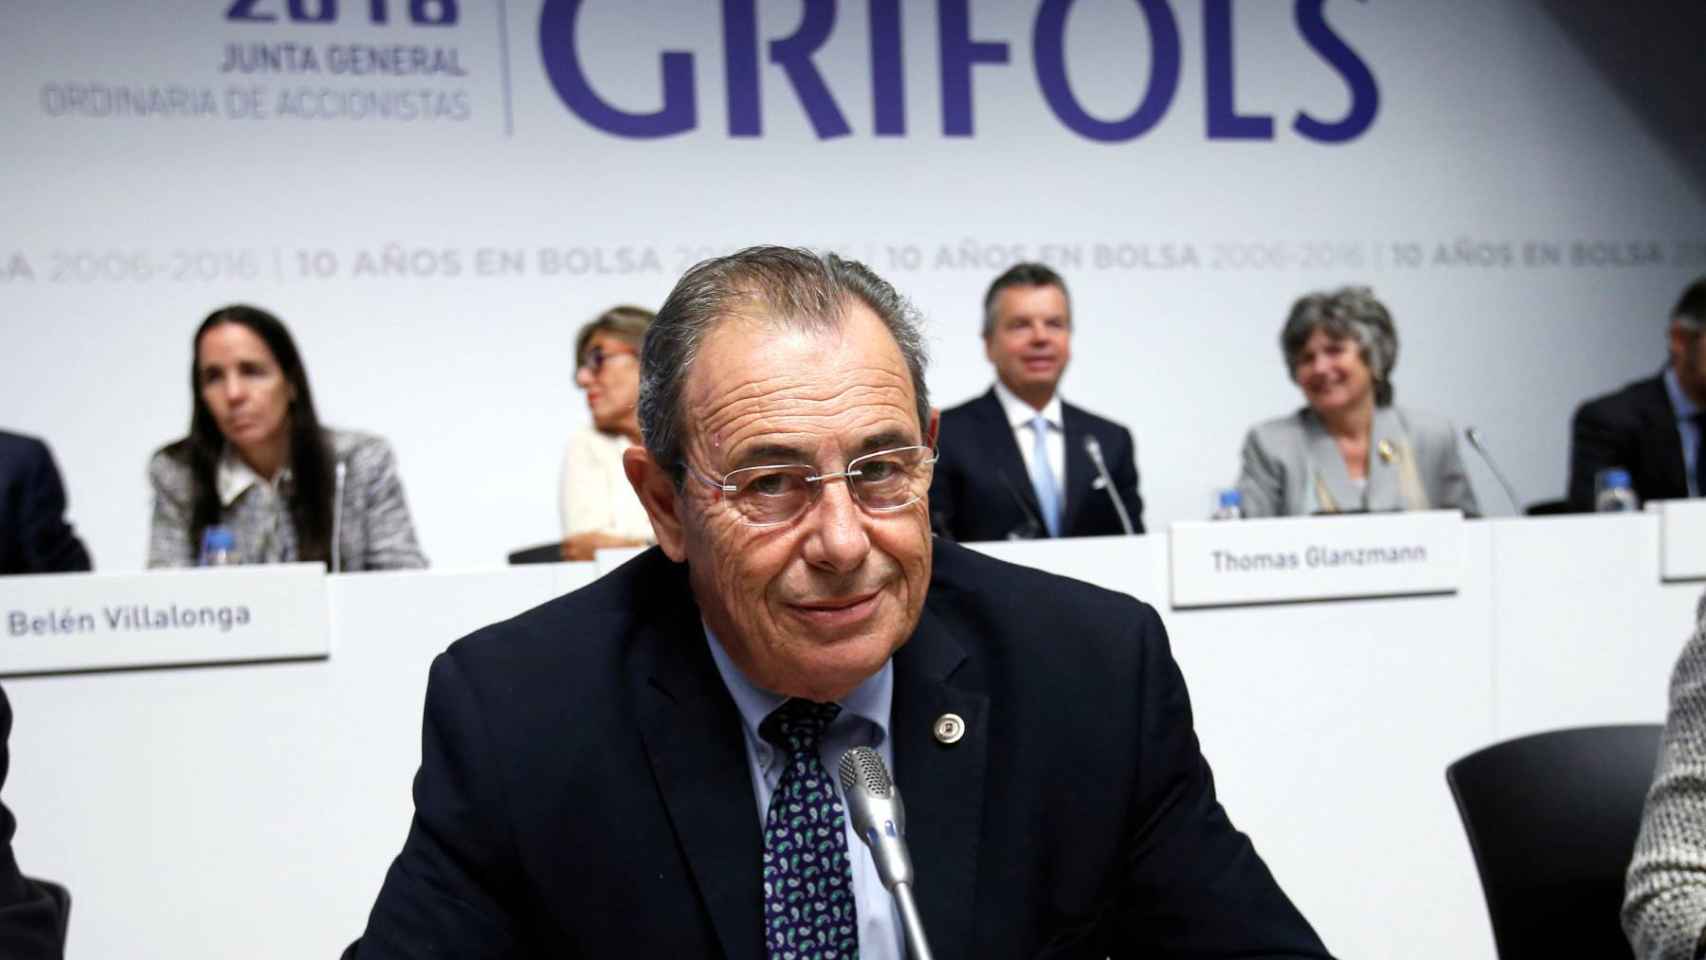 Víctor Grifols